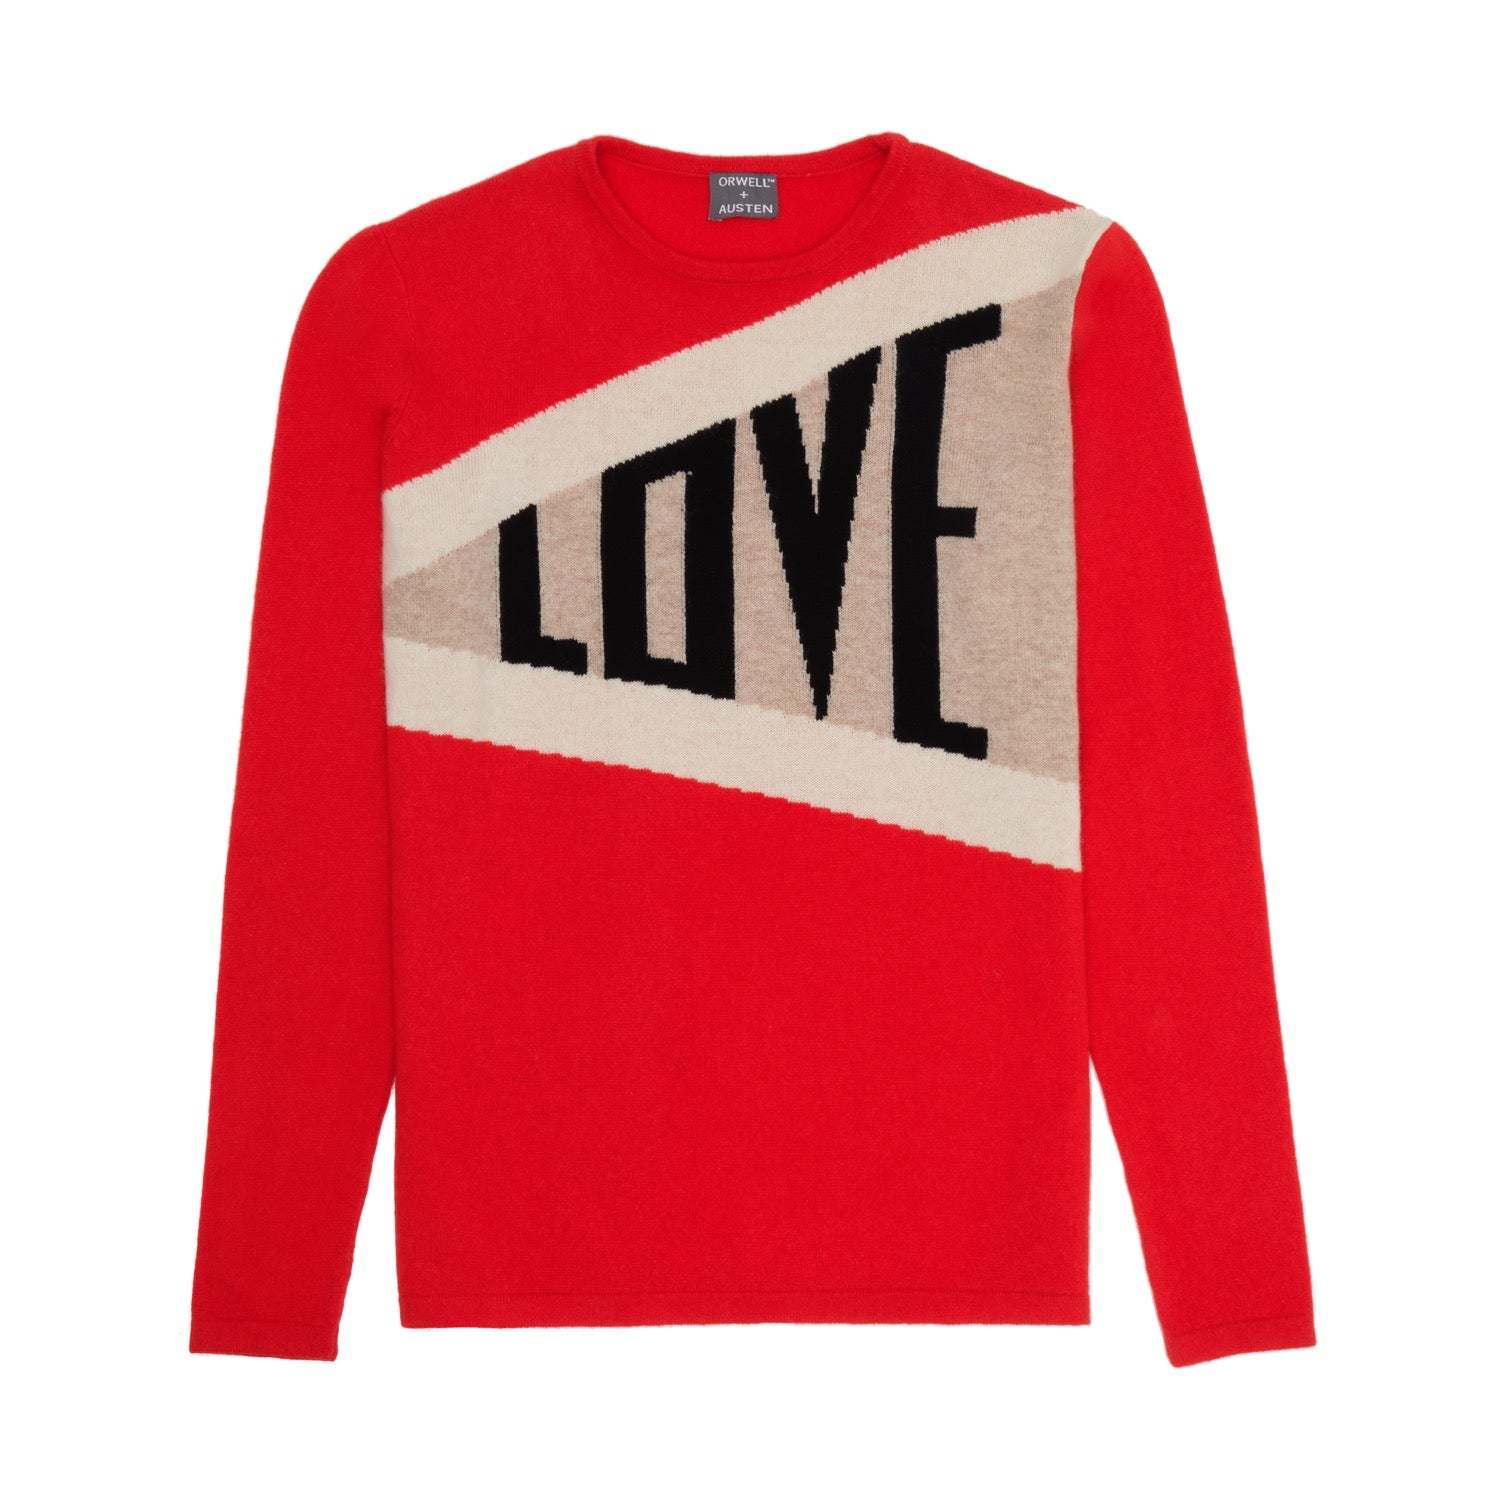 Love Cashmere Blend Sweater - Orwell + Austen